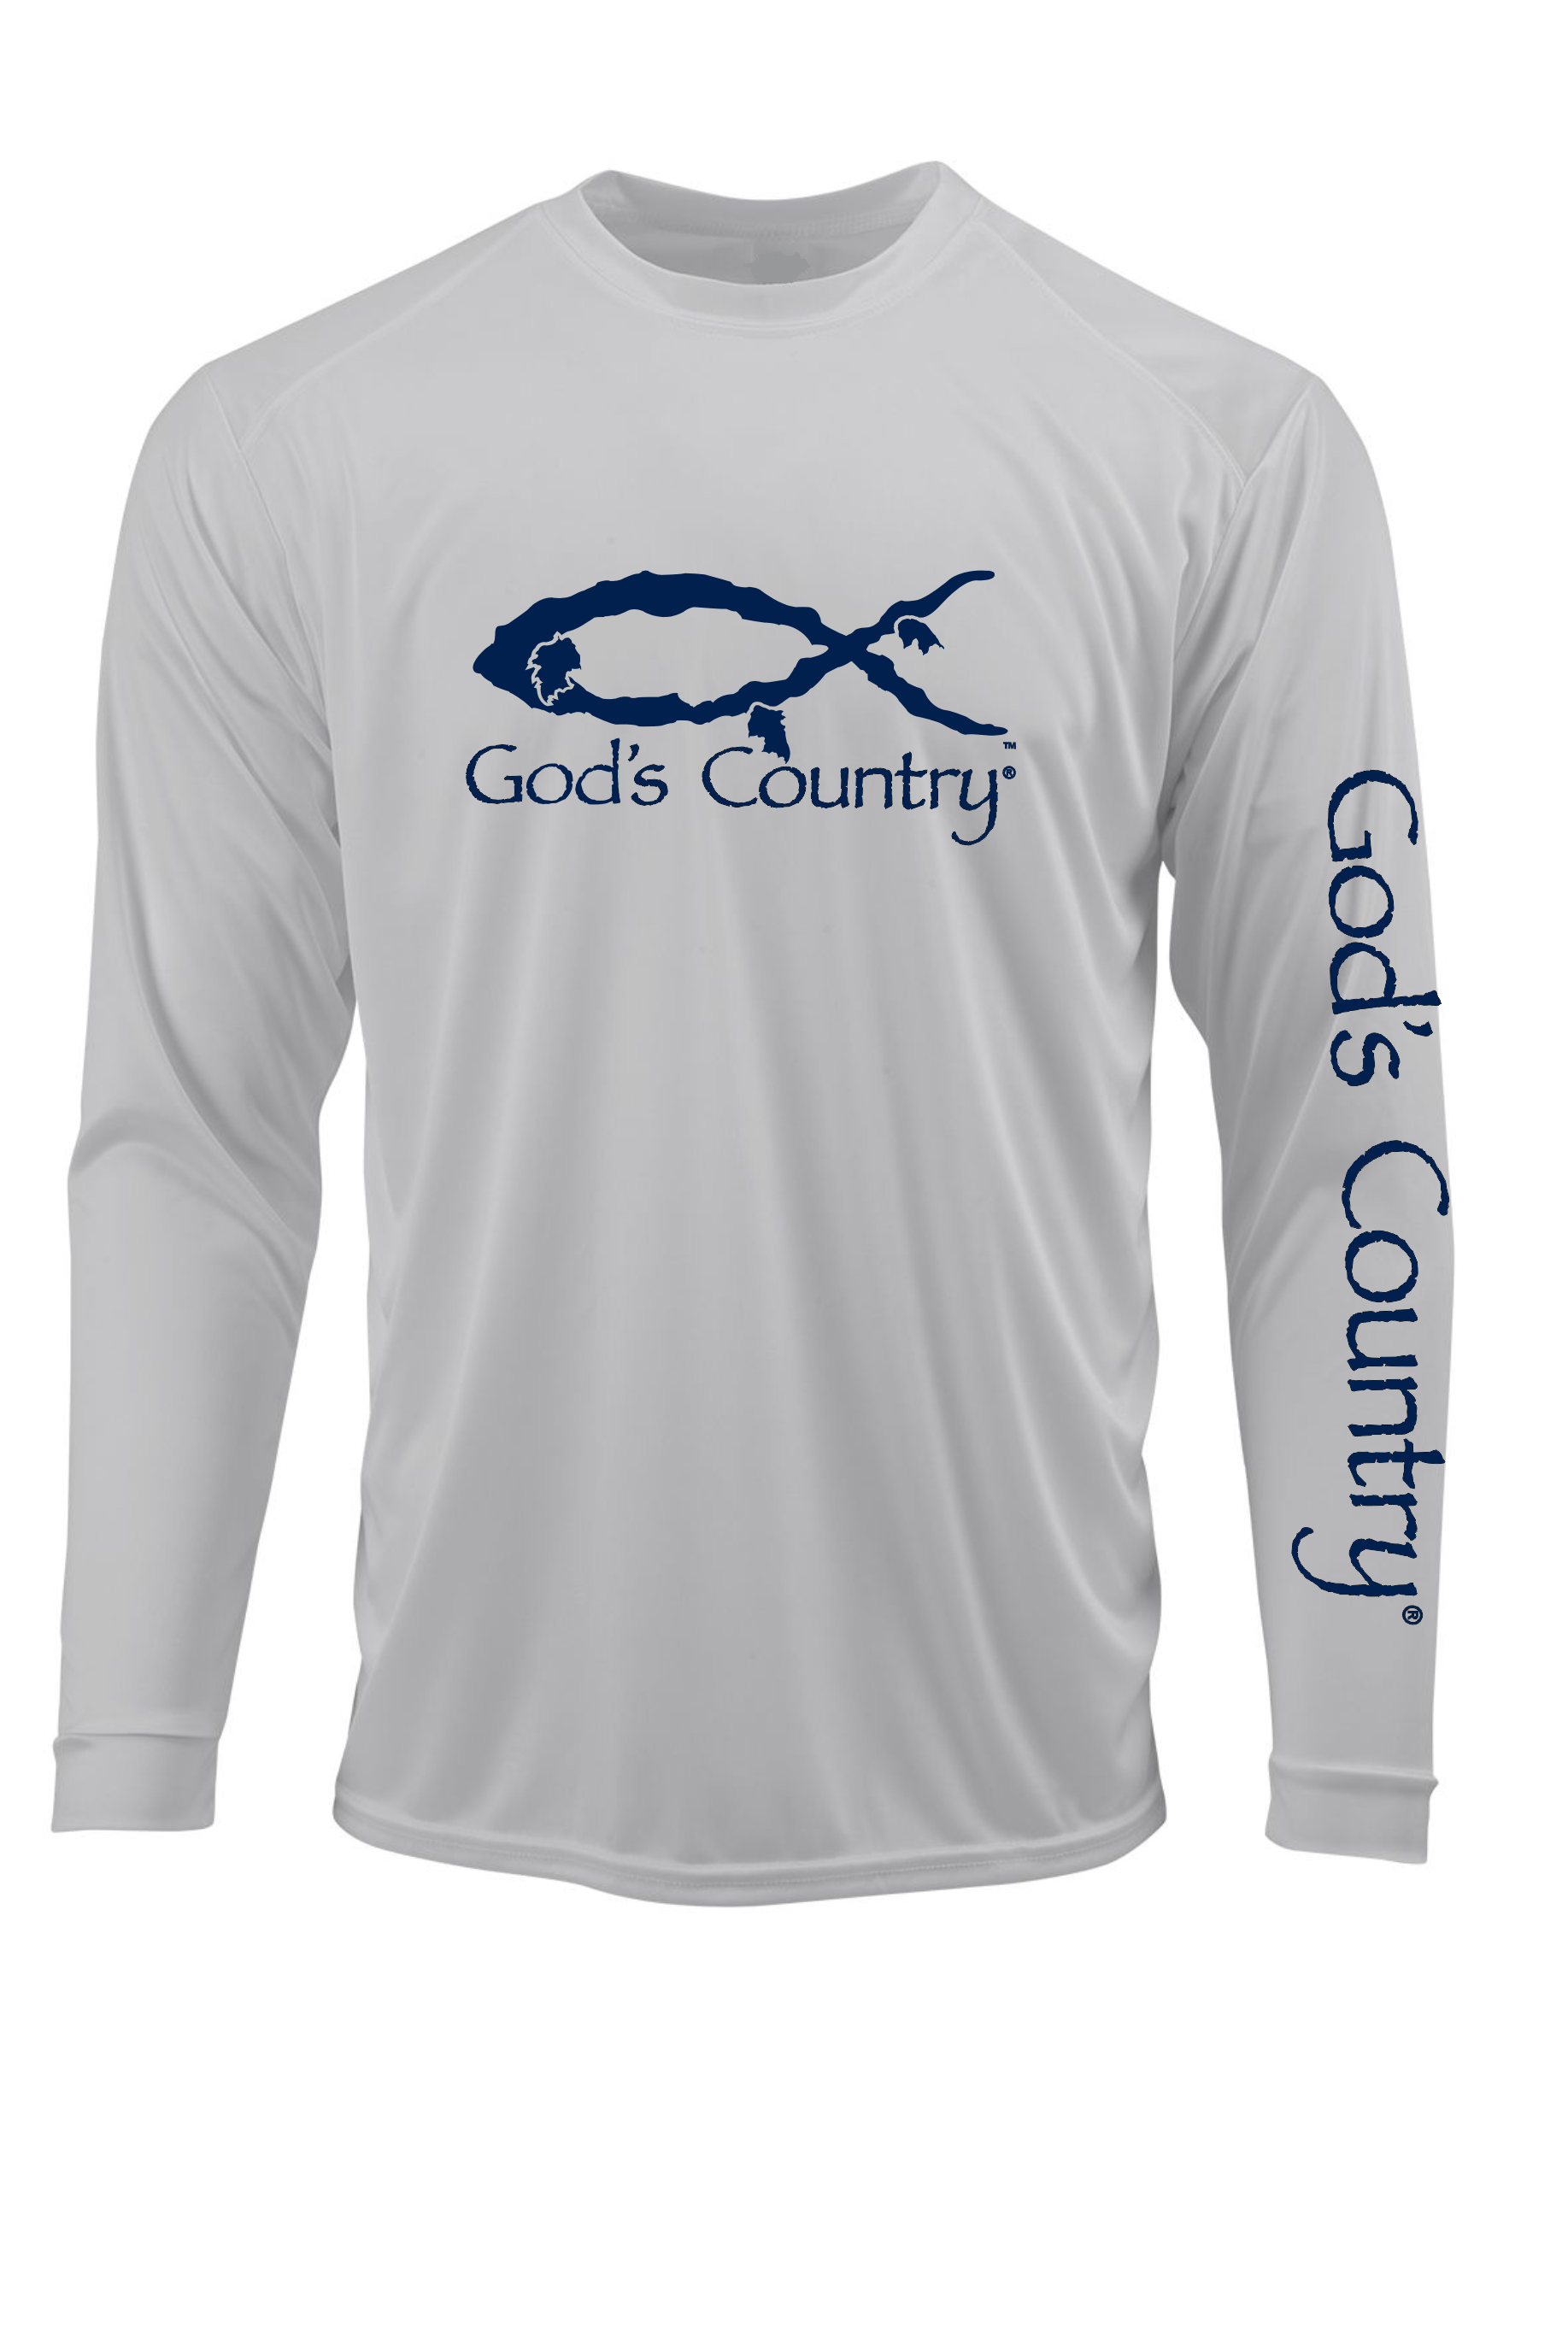 God's Country Fishing Shirt 3XL / Light Gray / Navy